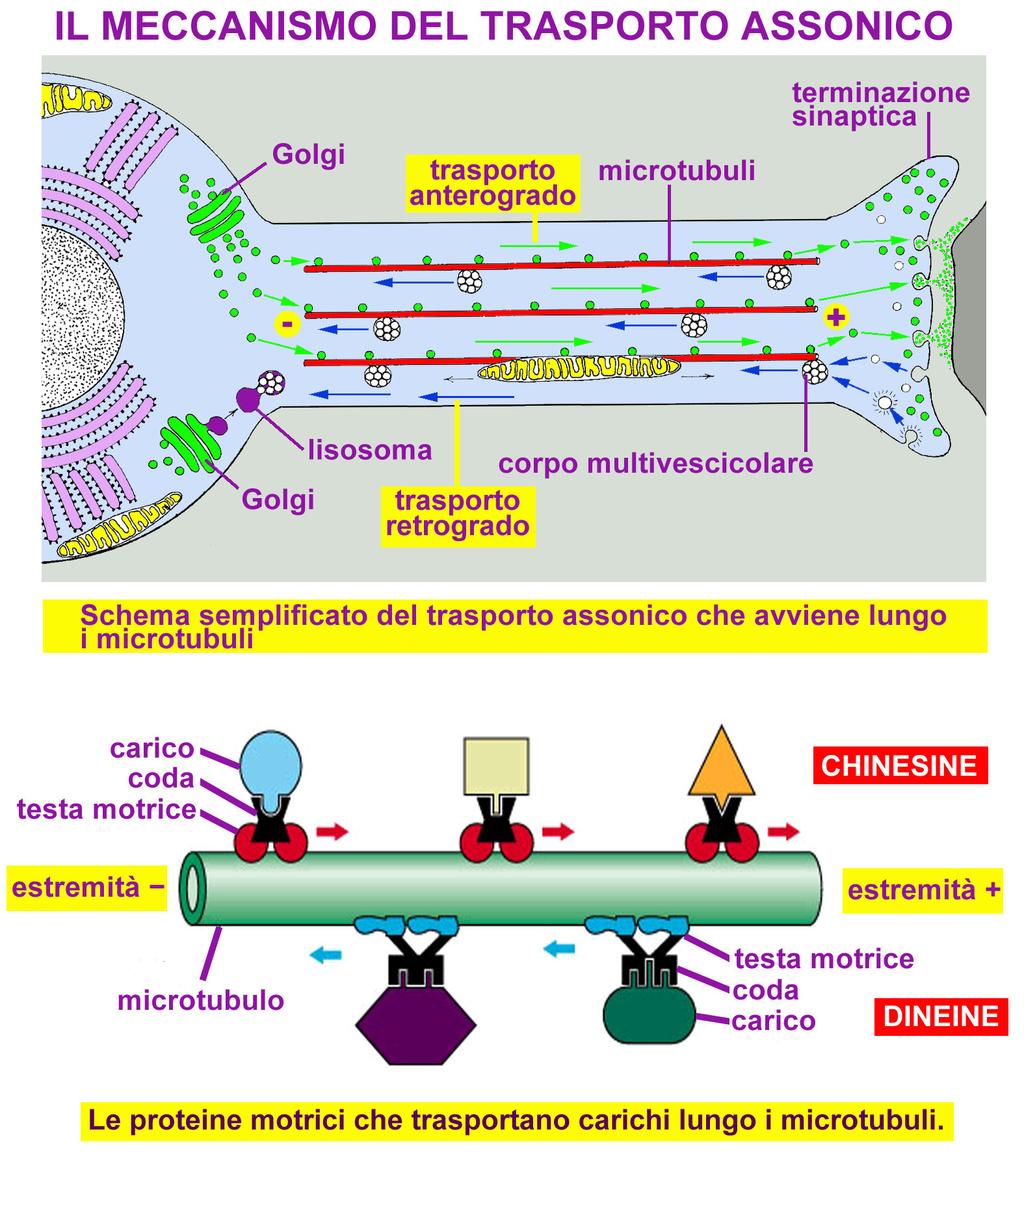 Proteine motrici: chinesine e dineine Proteine segnalatrici Molecole segnale: